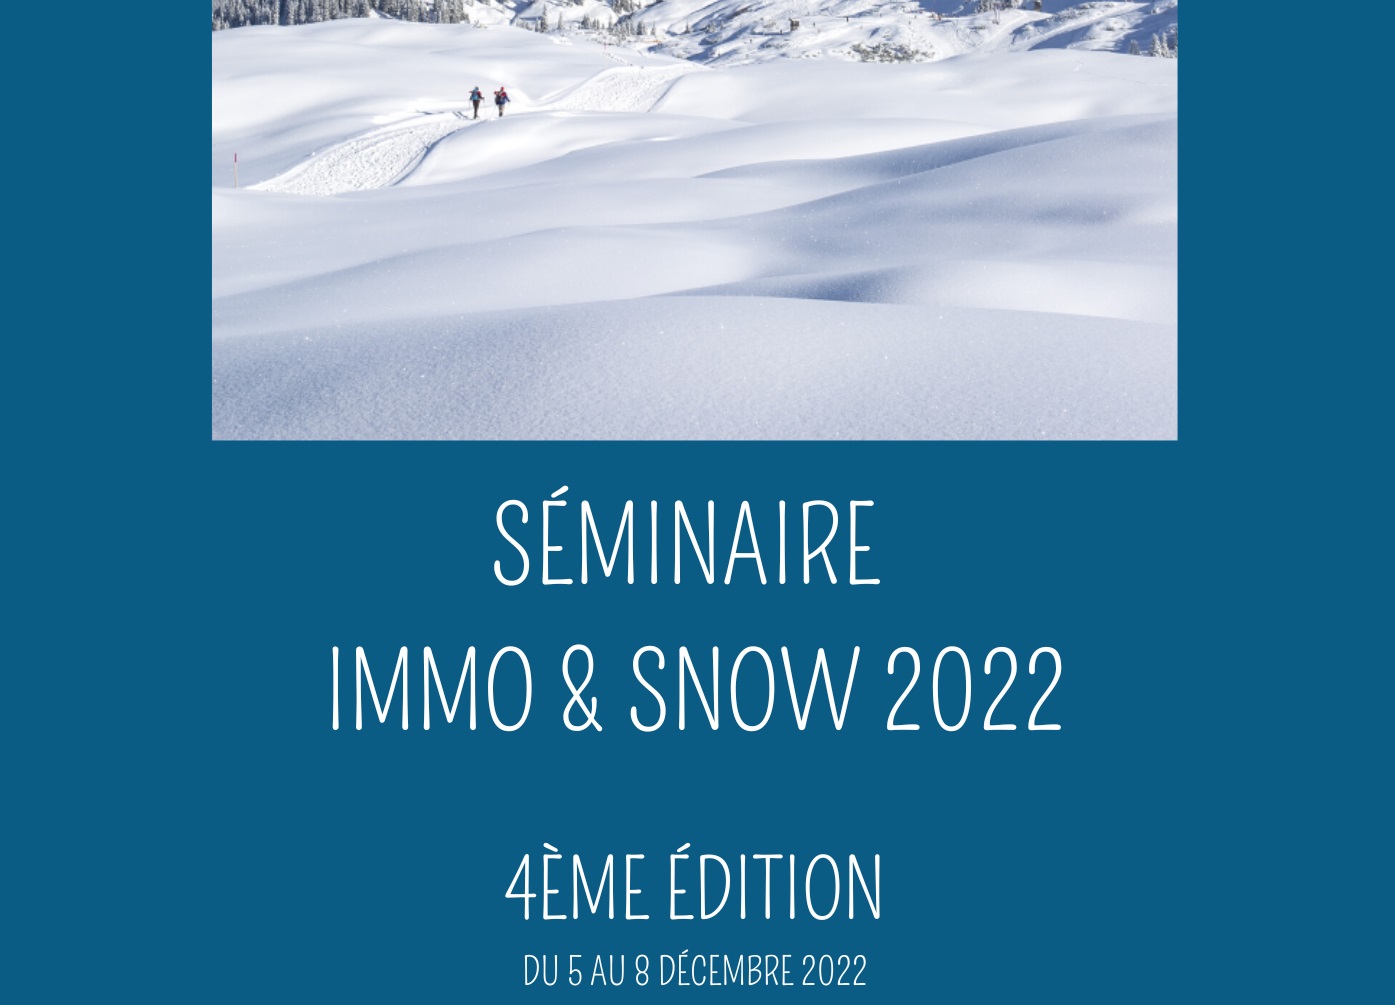 Le séminaire Immo and Snow propose de vous former au pied des pistes